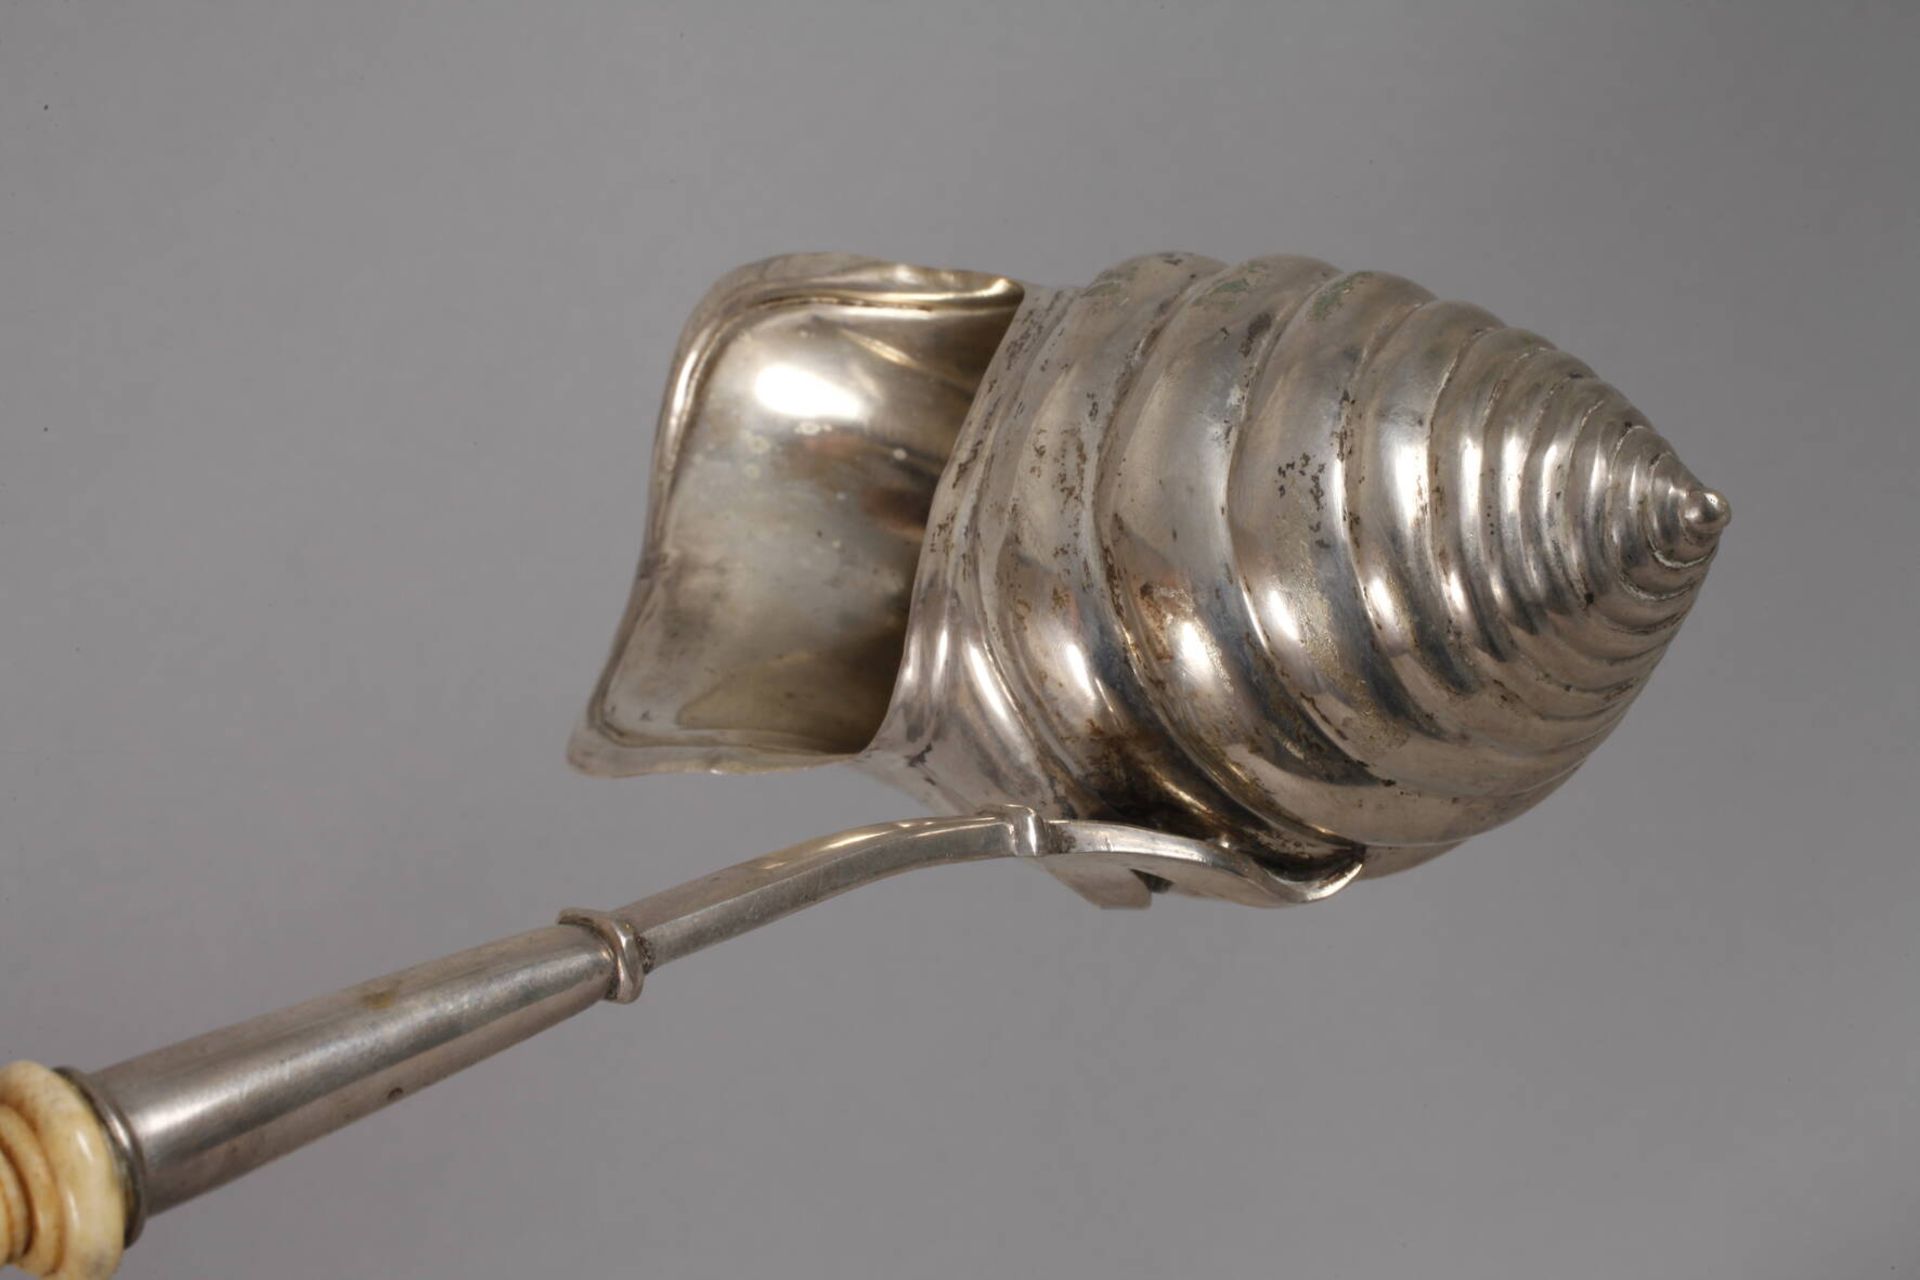 Silber seltene Biedermeierkelle mit Schneckenkorpusum 1800, gestempelt 12 Lot, unleserlicher - Image 3 of 4